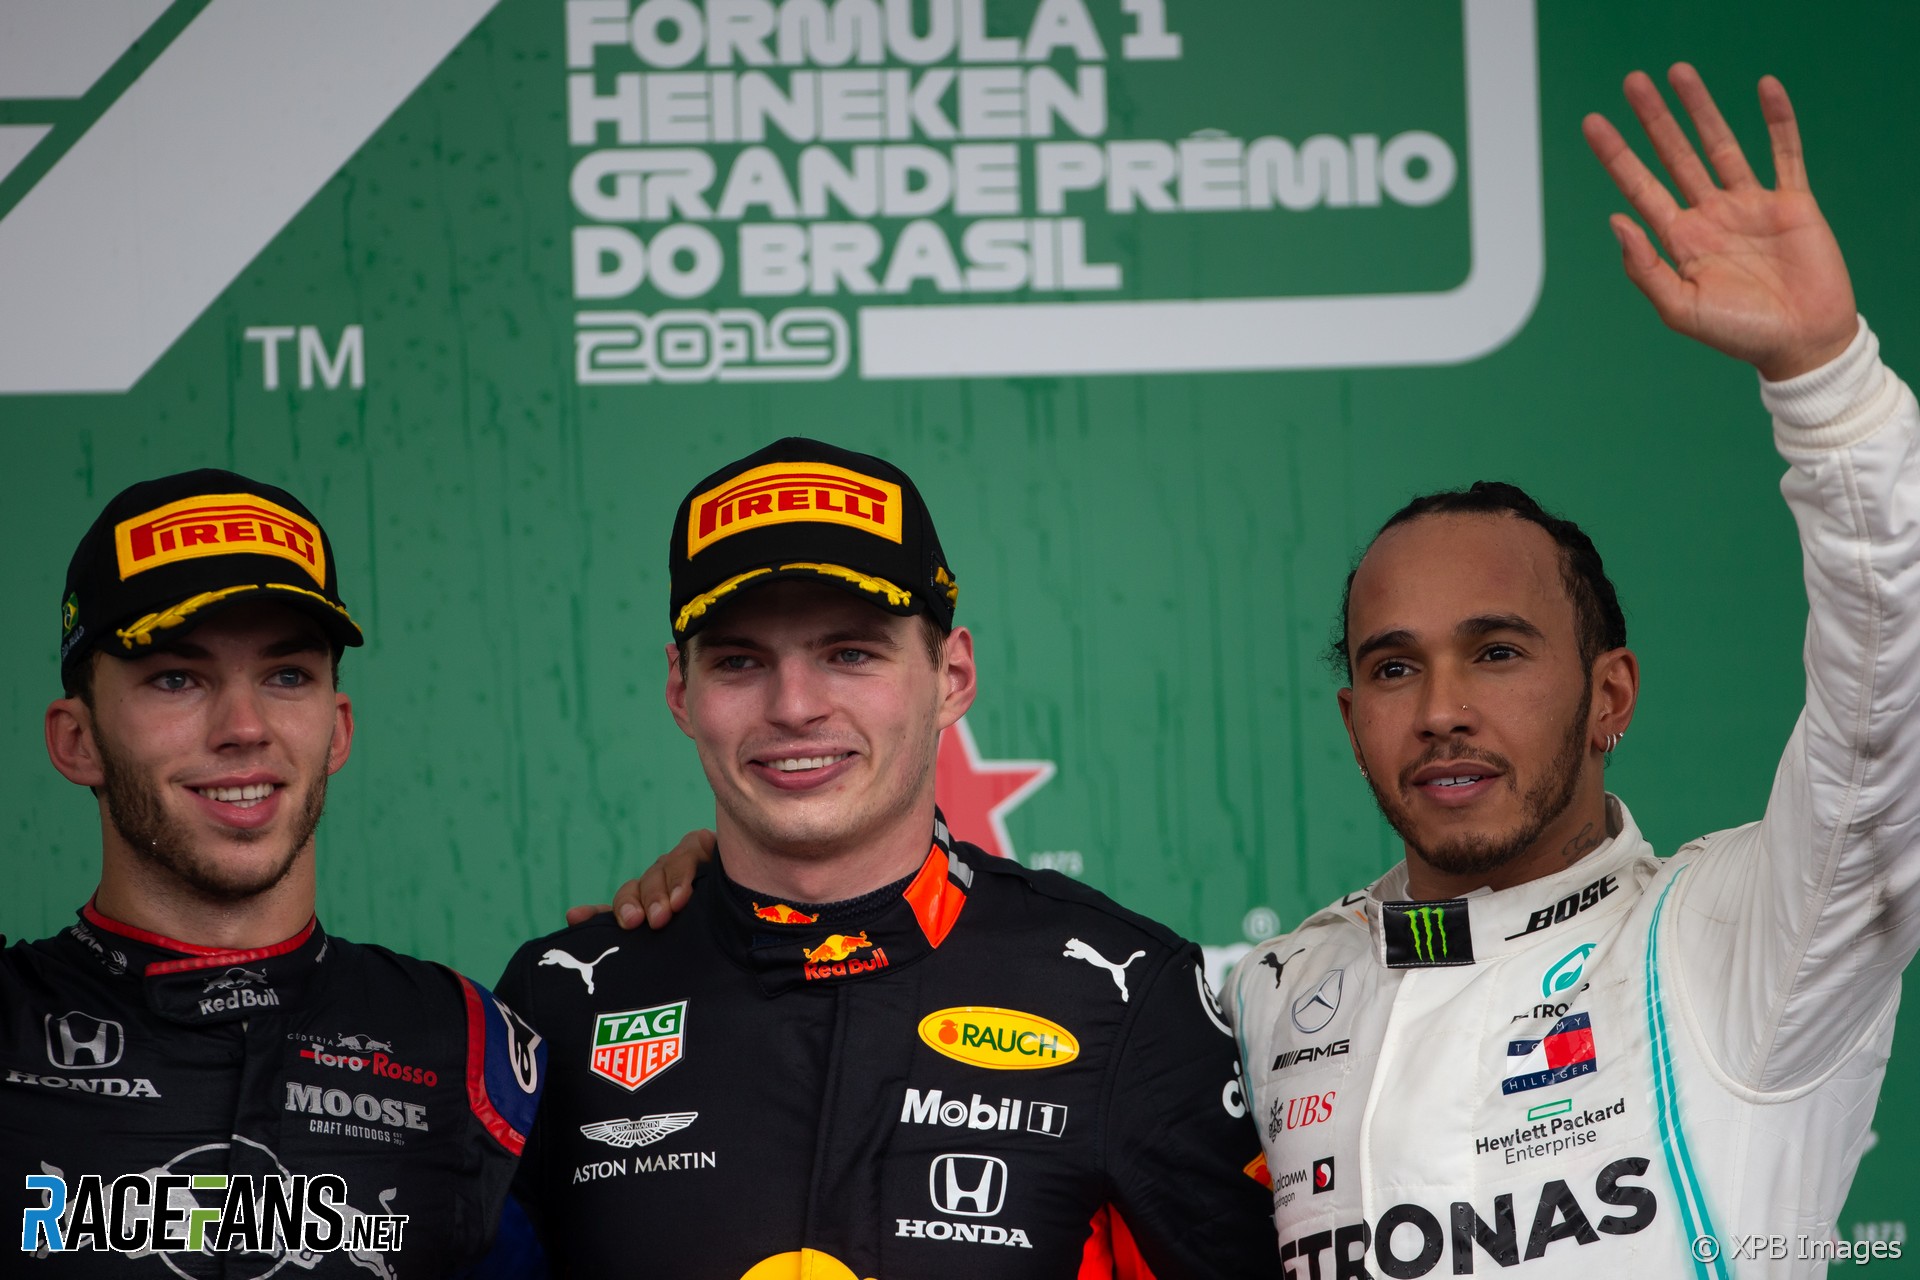 Max Verstappen, Red Bull, Interlagos, 2019